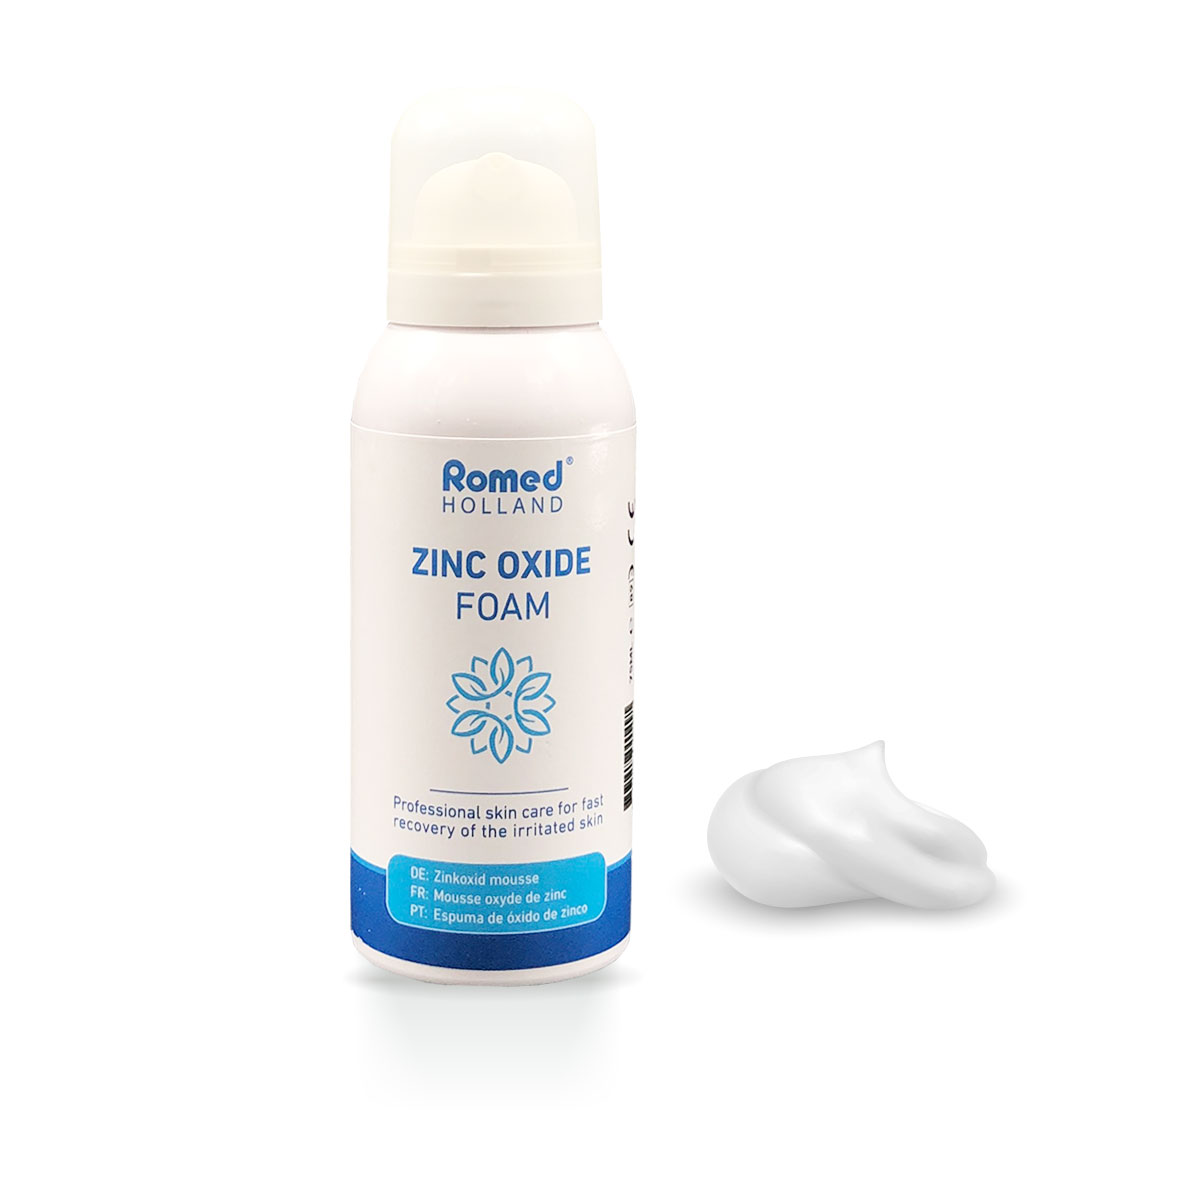 ZINC-125 Espuma de óxido de zinc Romed, 125 ml, 12 unidades en una caja de cartón.